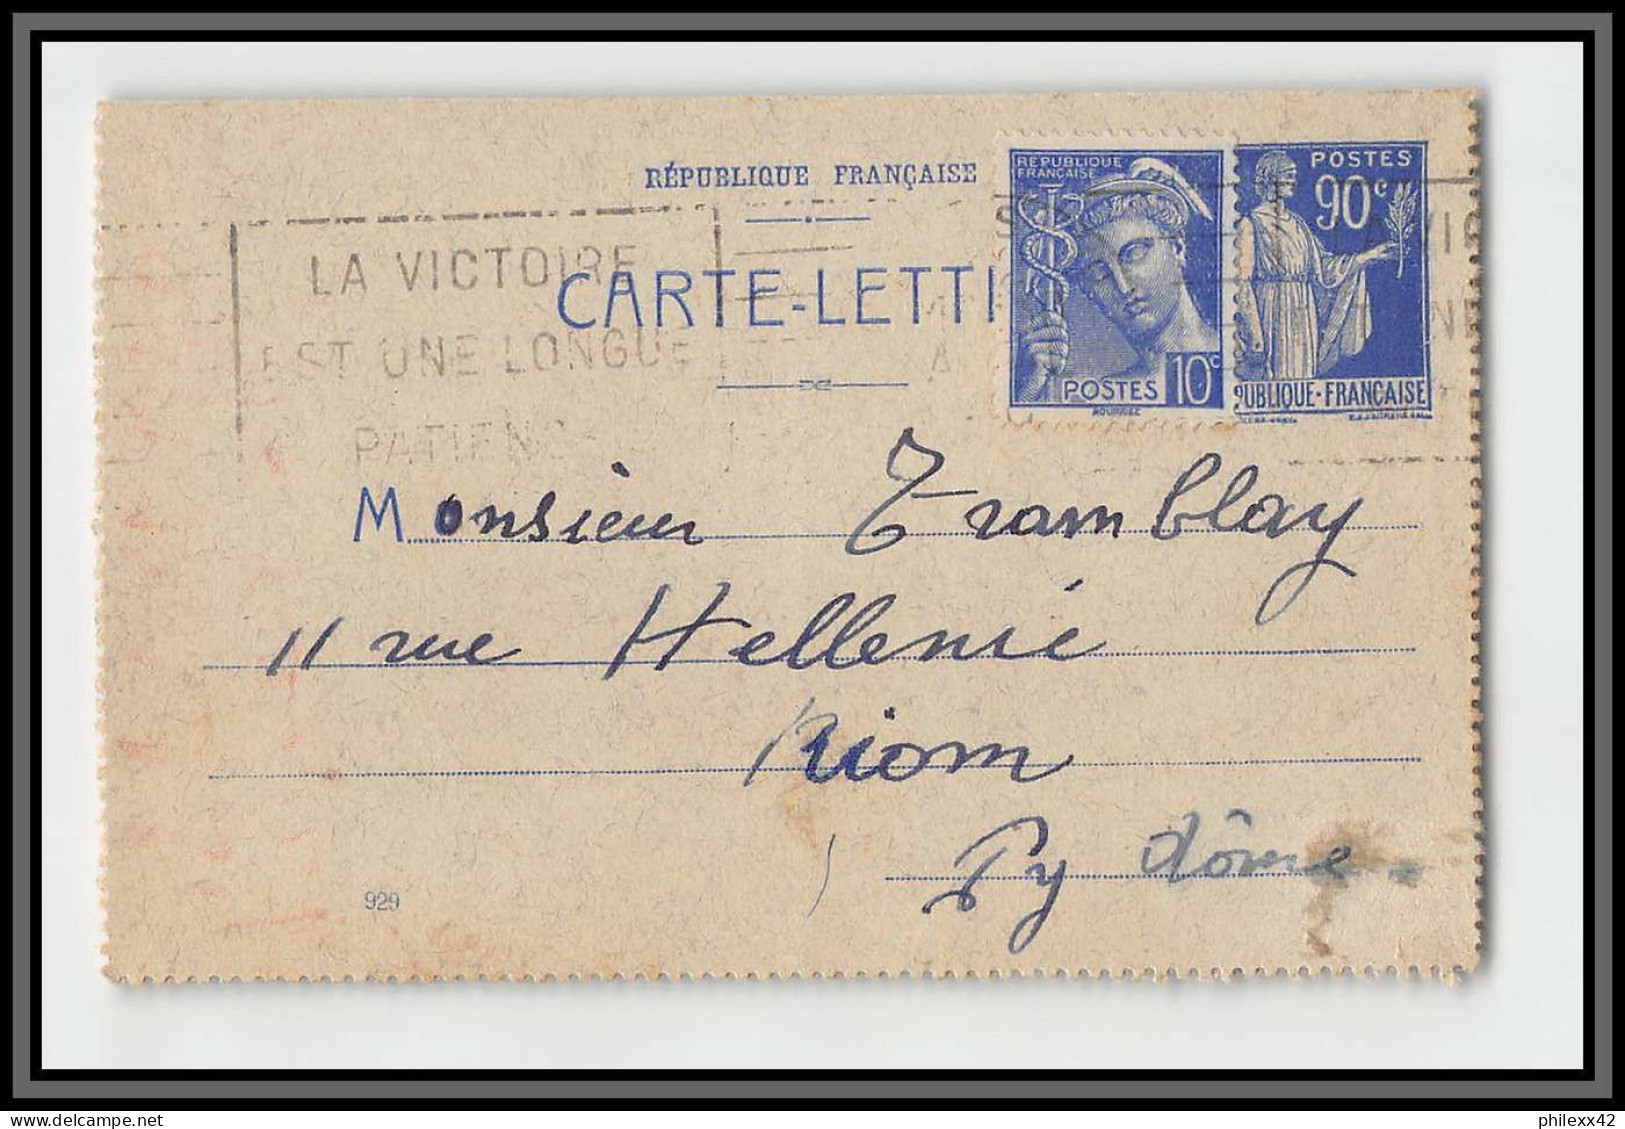 75160 90c Bleu PAI F2 Date 929 Krag Paris Riom 1940 Paix Entier Postal Stationery Carte Lettre France - Cartes-lettres